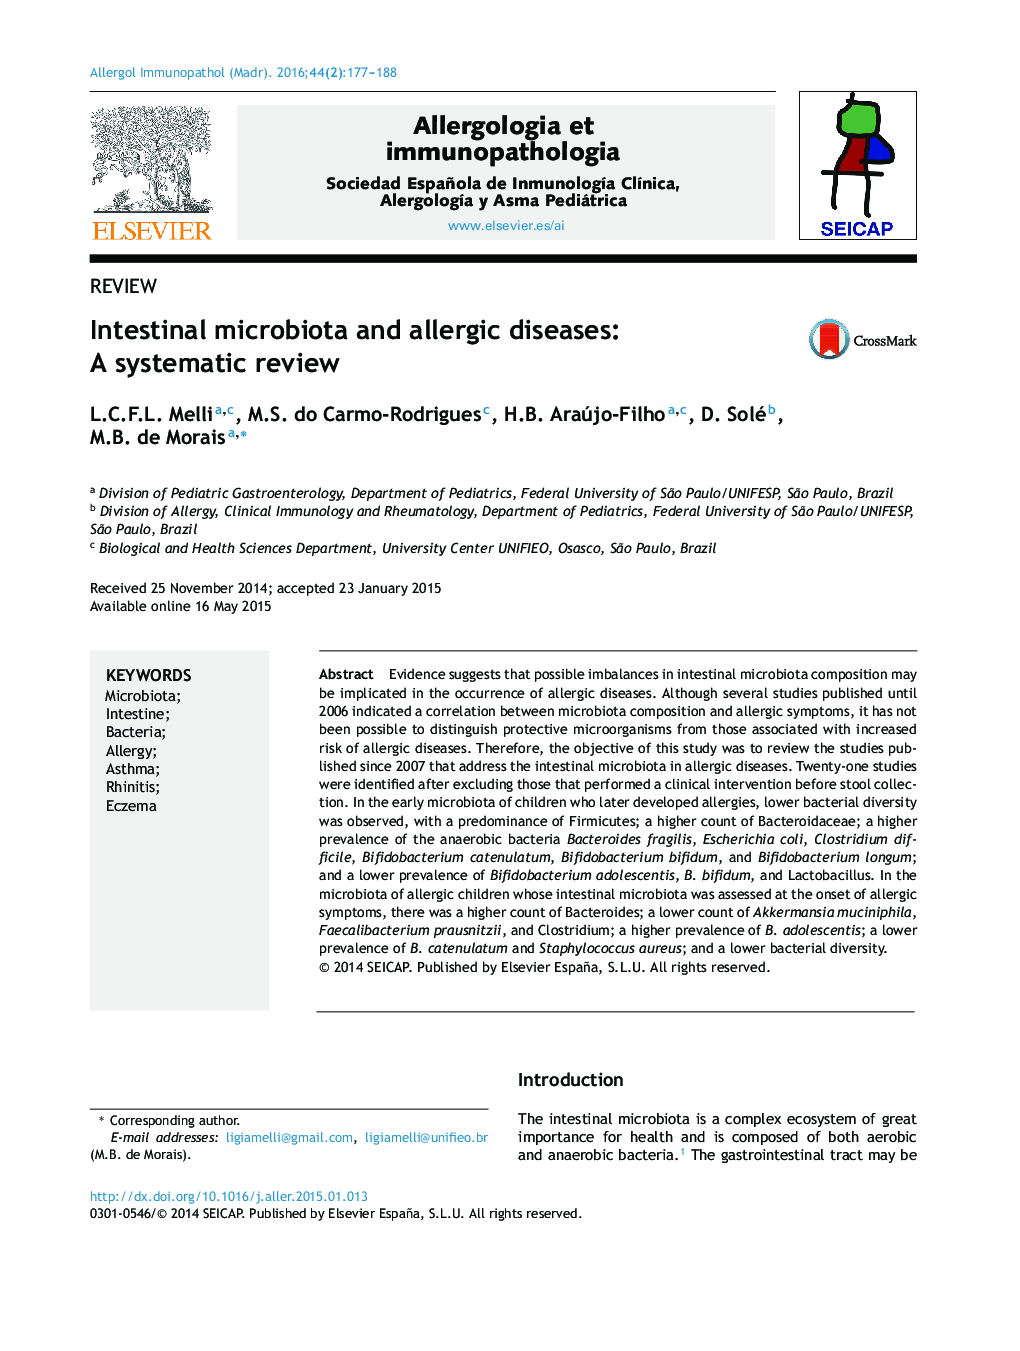 میکروبیولوژی روده و بیماری های آلرژیک: بررسی سیستماتیک 